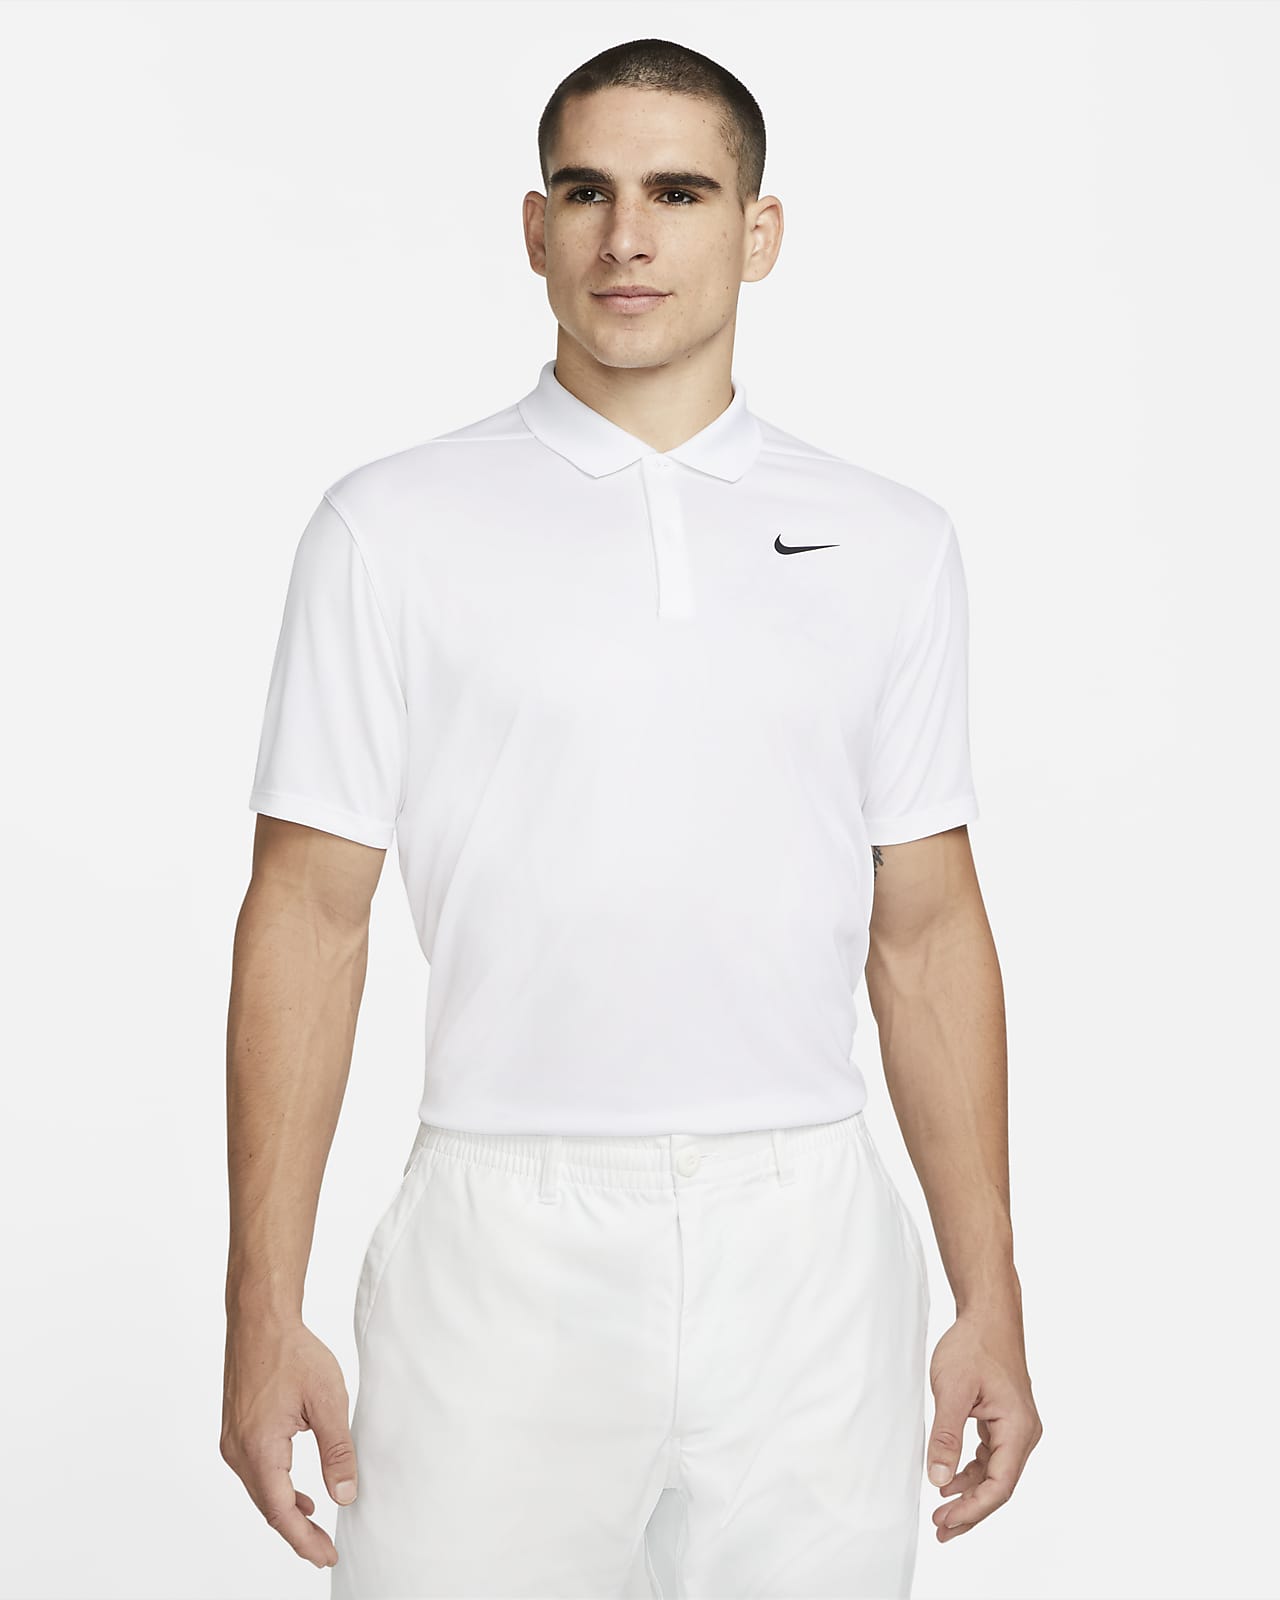 NikeCourt Dri-FIT Men's Tennis Polo